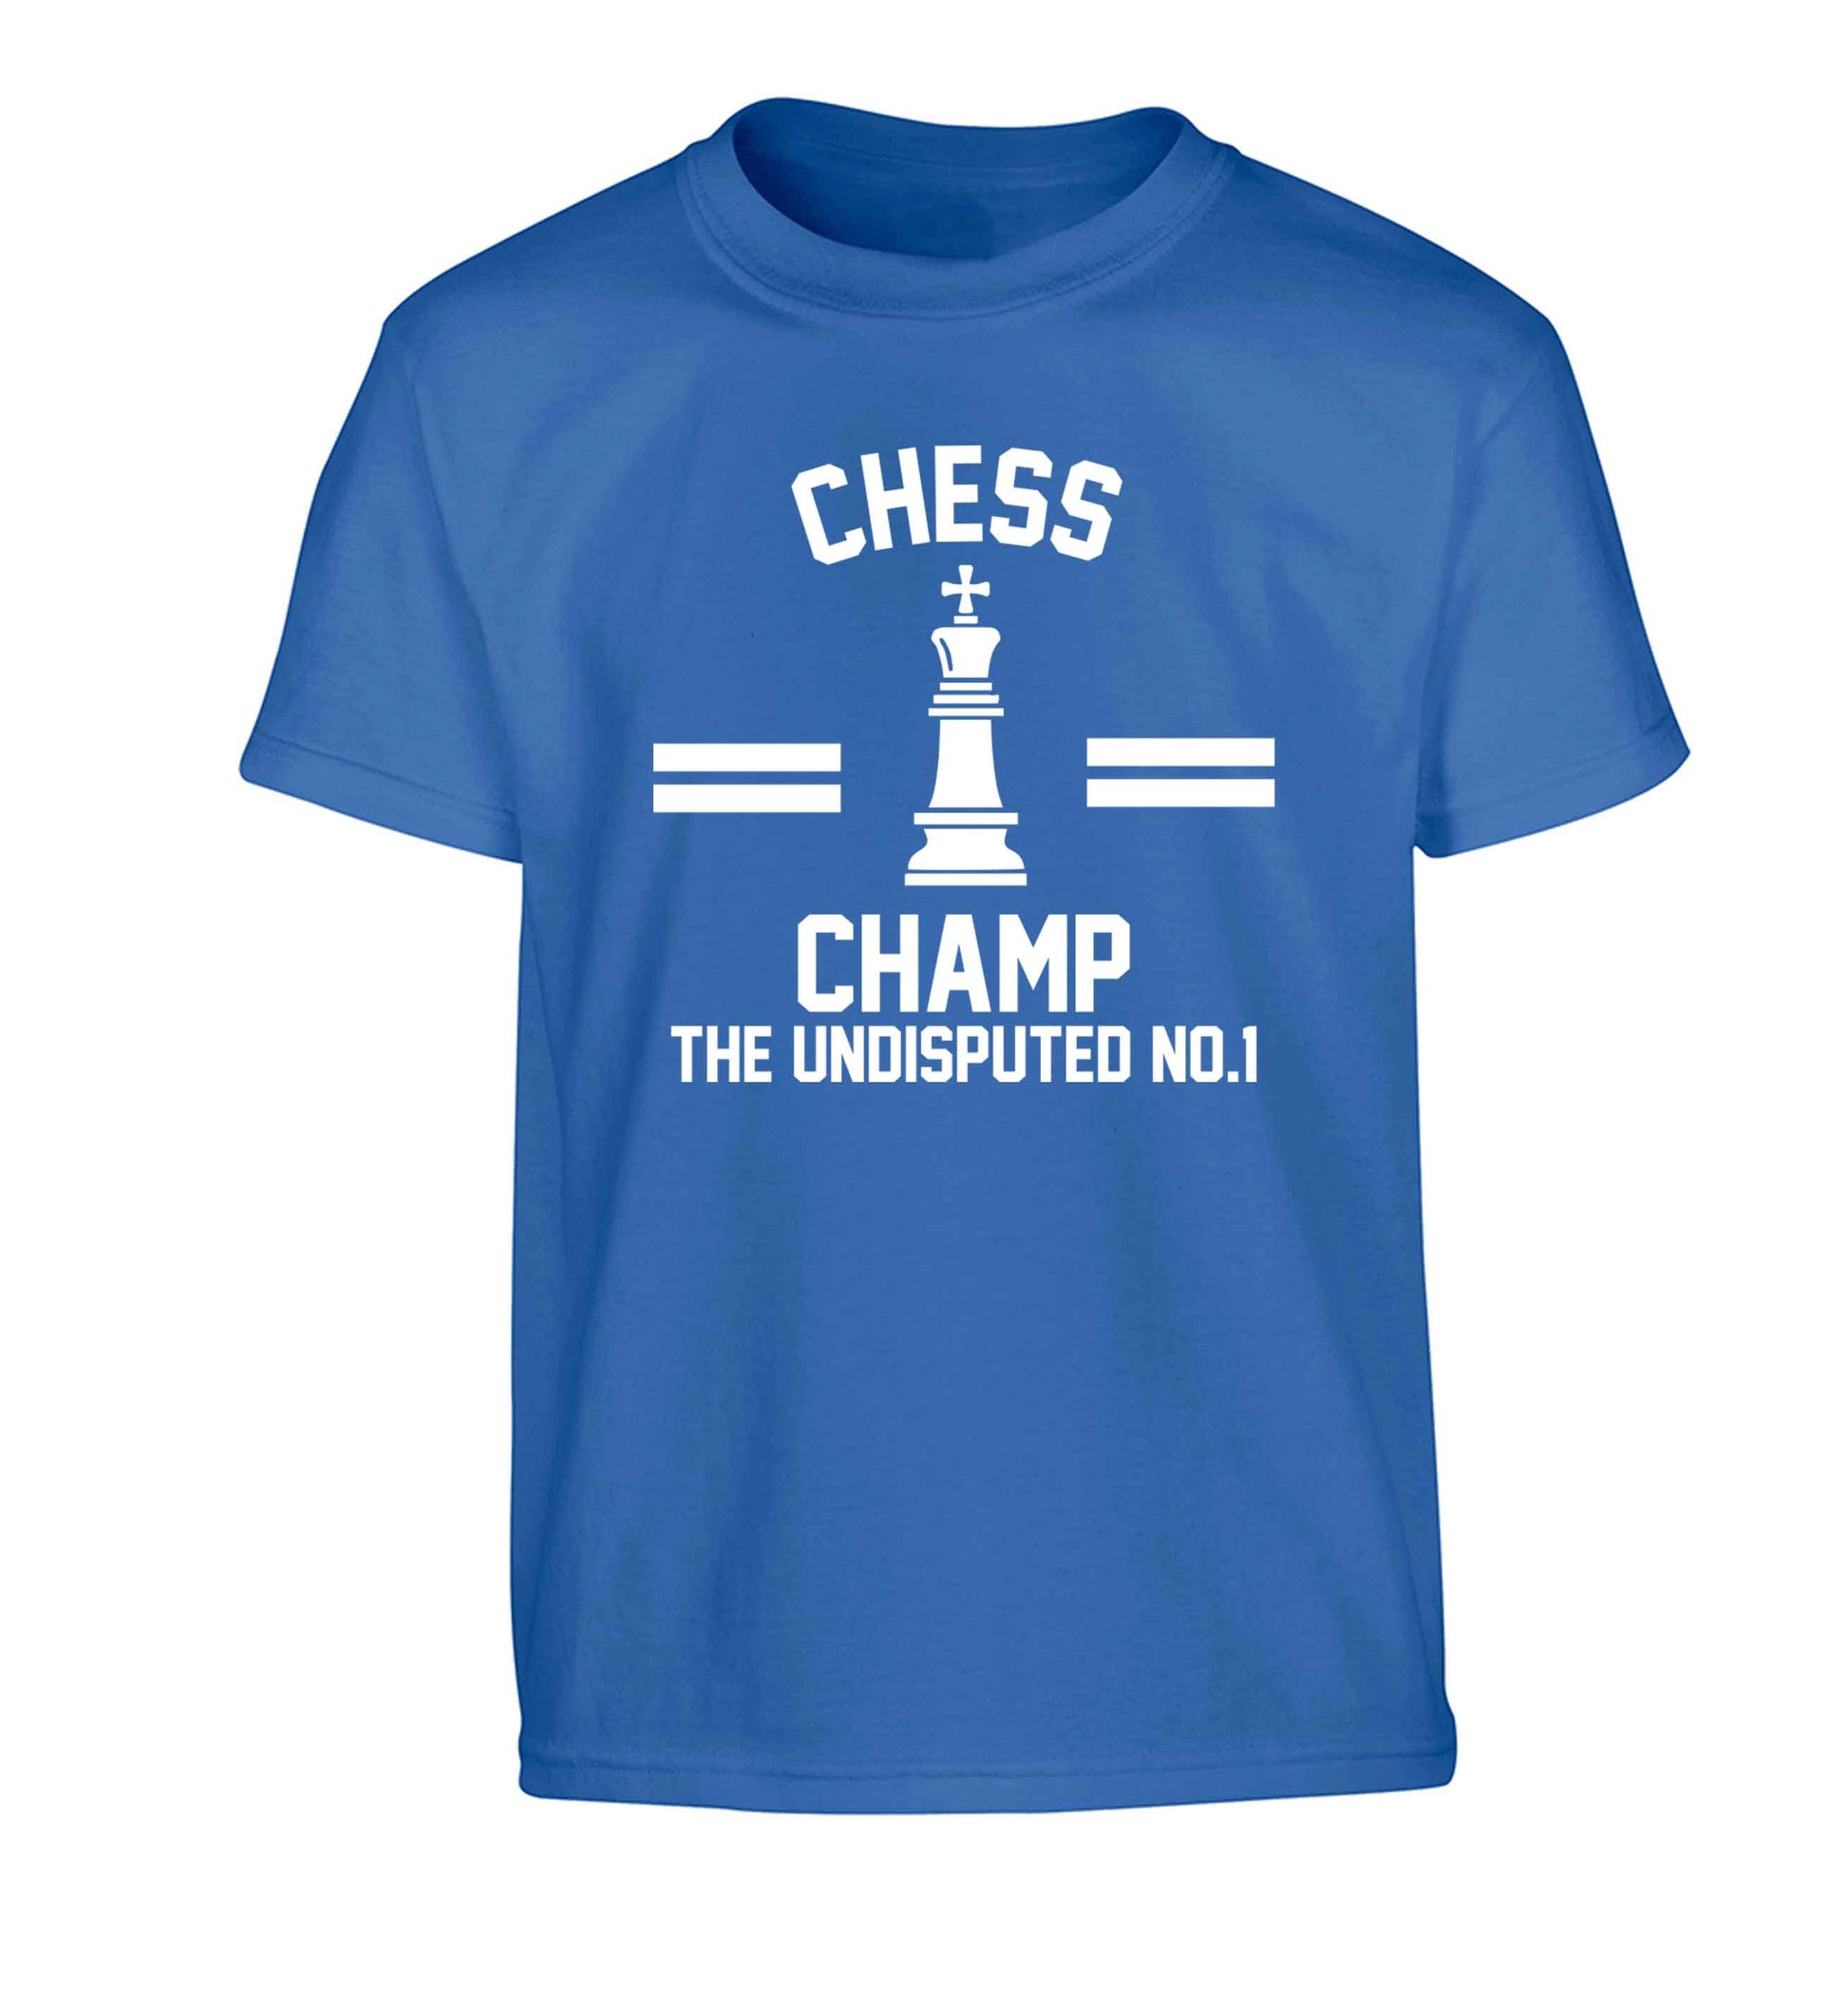 Undisputed chess championship no.1  Children's blue Tshirt 12-13 Years